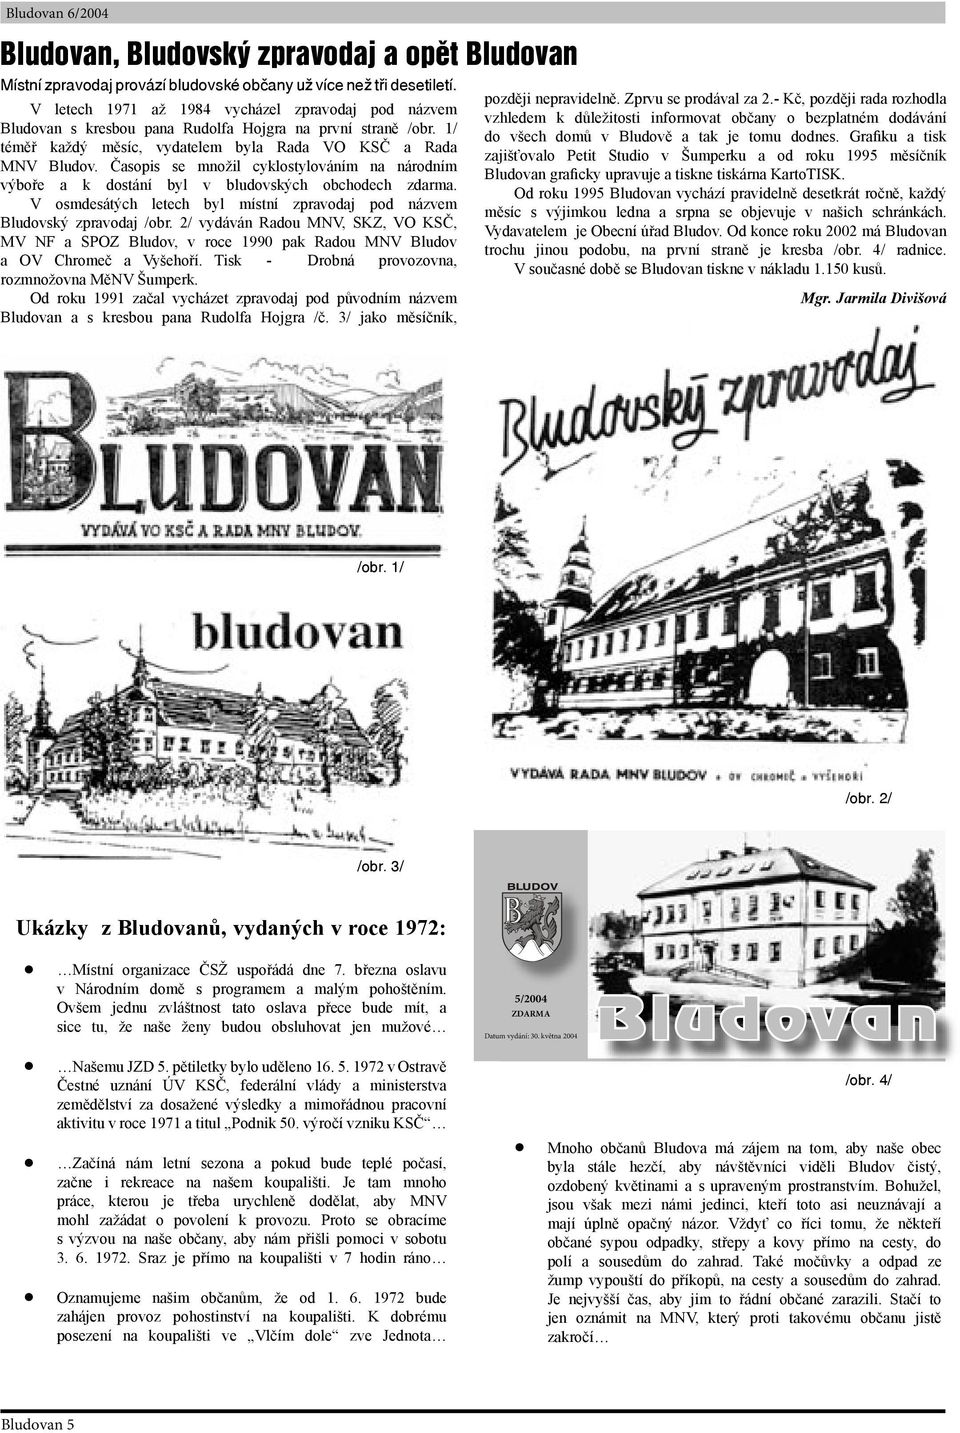 Časopis se množil cyklostylováním na národním výboře a k dostání byl v bludovských obchodech zdarma. V osmdesátých letech byl místní zpravodaj pod názvem Bludovský zpravodaj /obr.